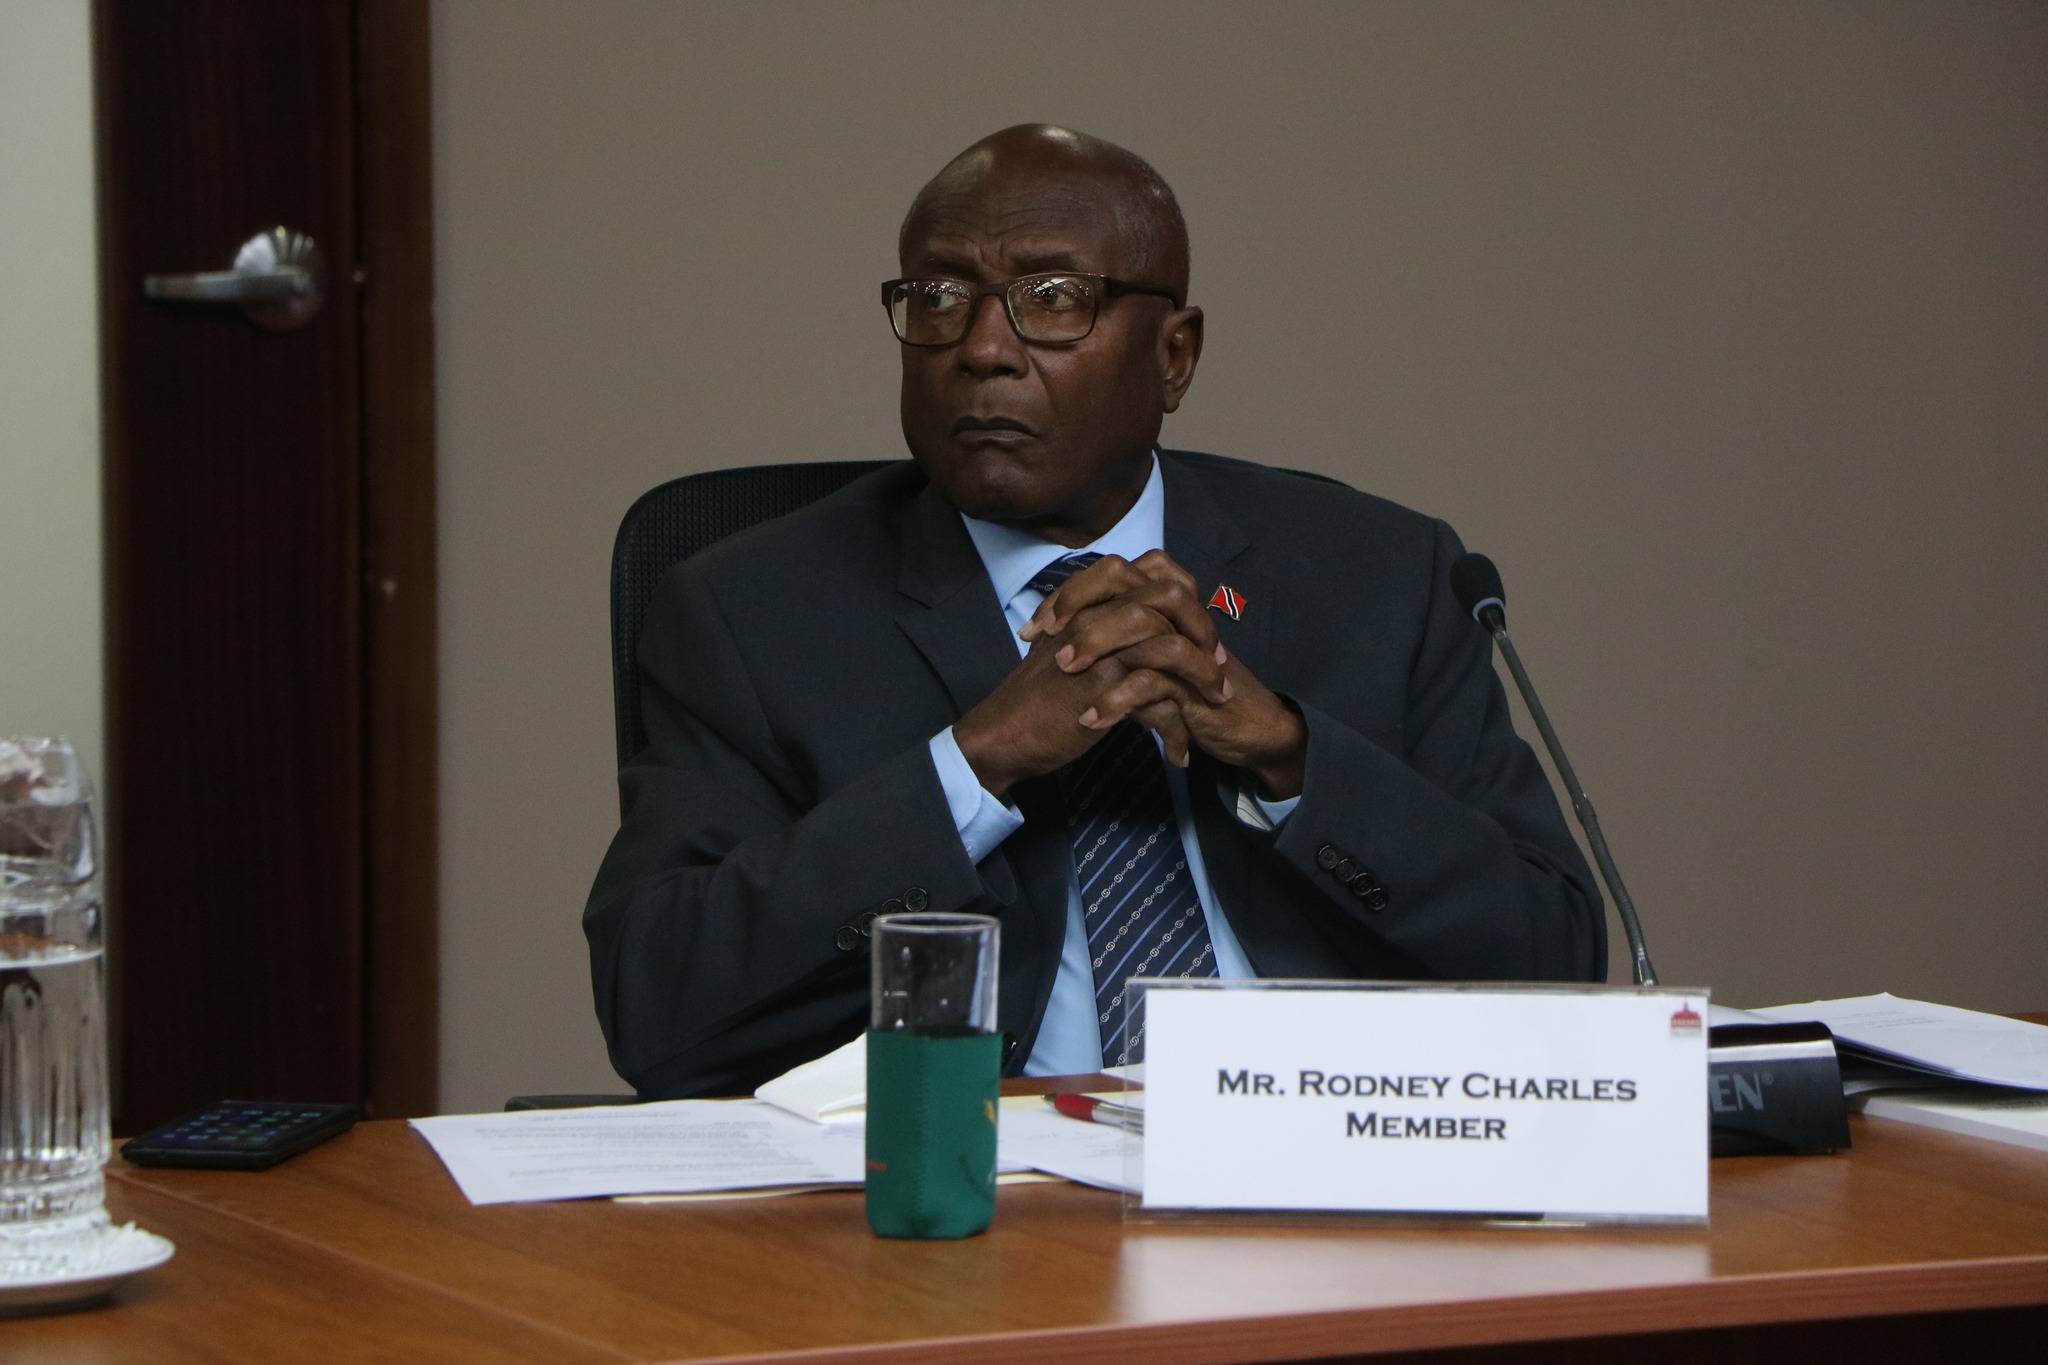 Rodney Charles warns of legal action against media over “egregious falsehood”